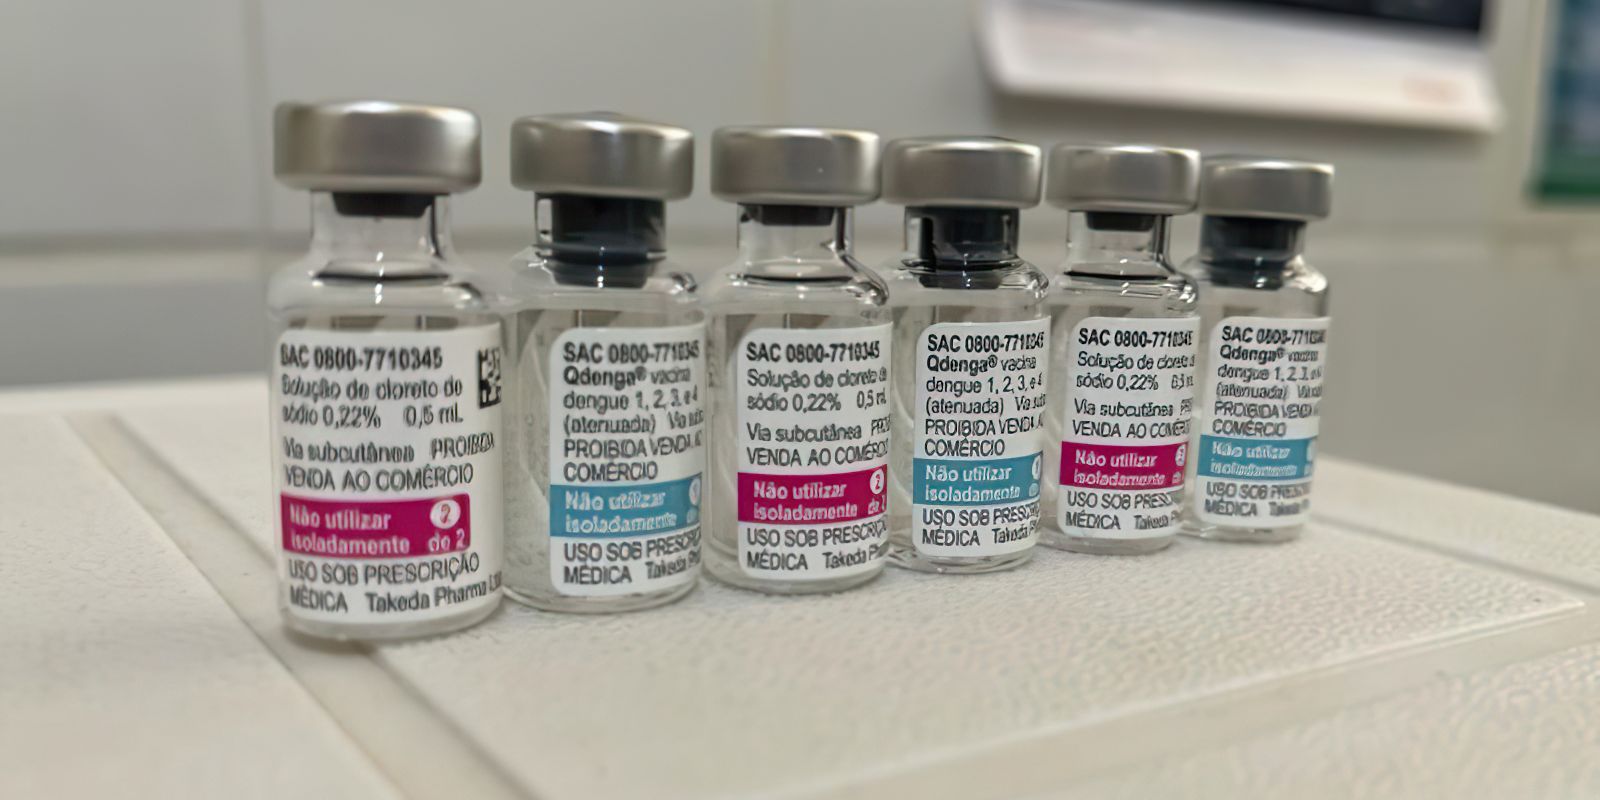 parana-ve-doses-insuficientes-e-pede-mais-vacinas-contra-a-dengue